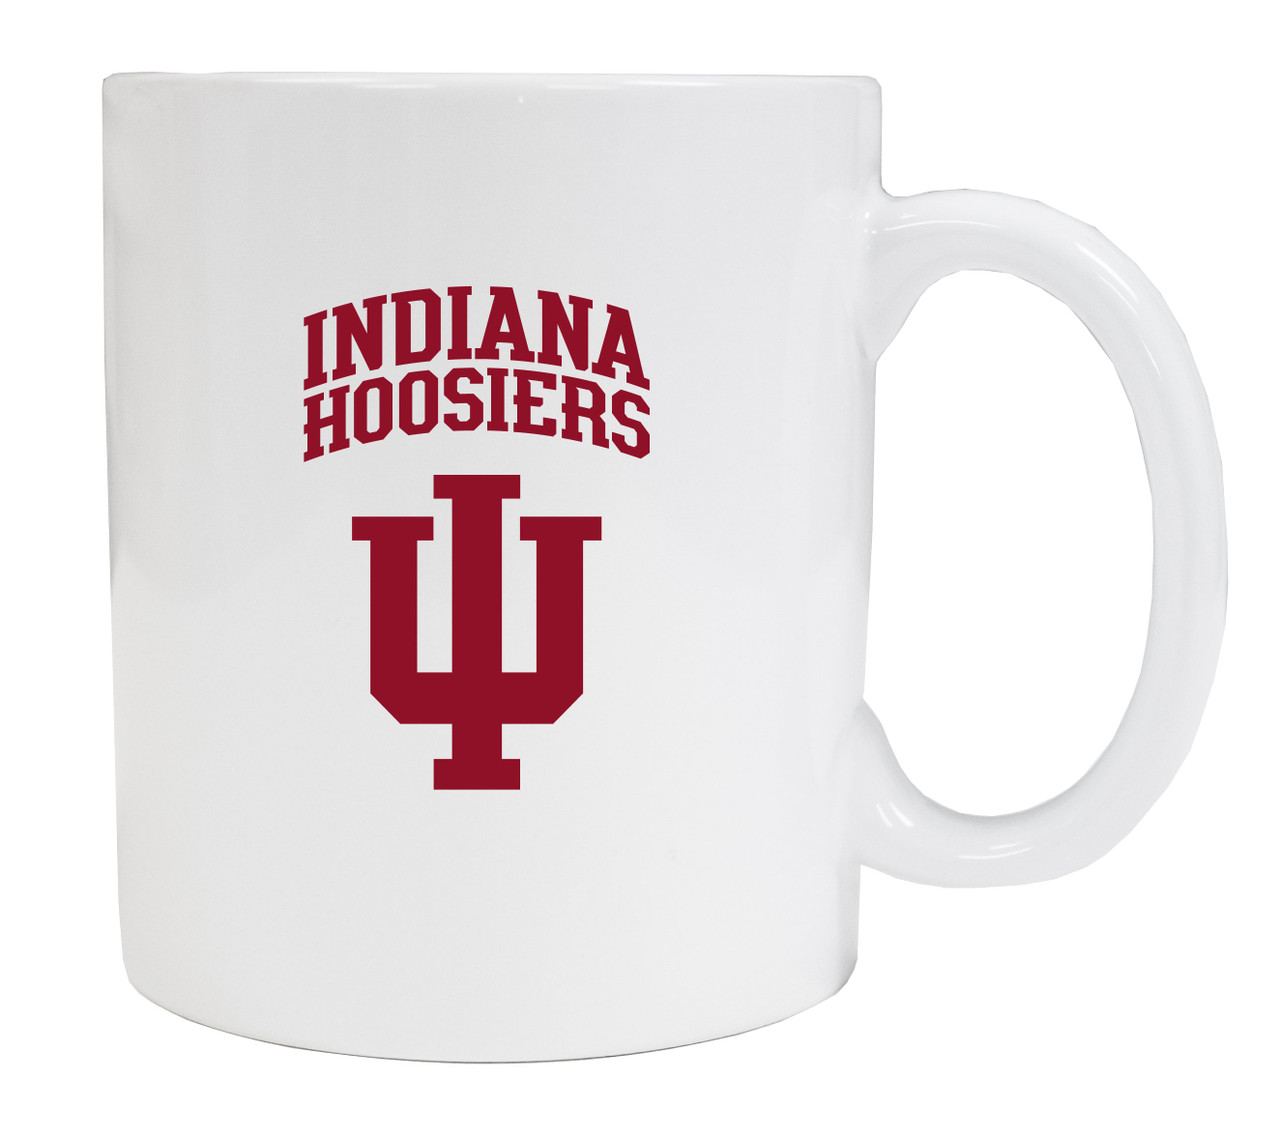 Indiana Hoosiers White Ceramic Mug (White).